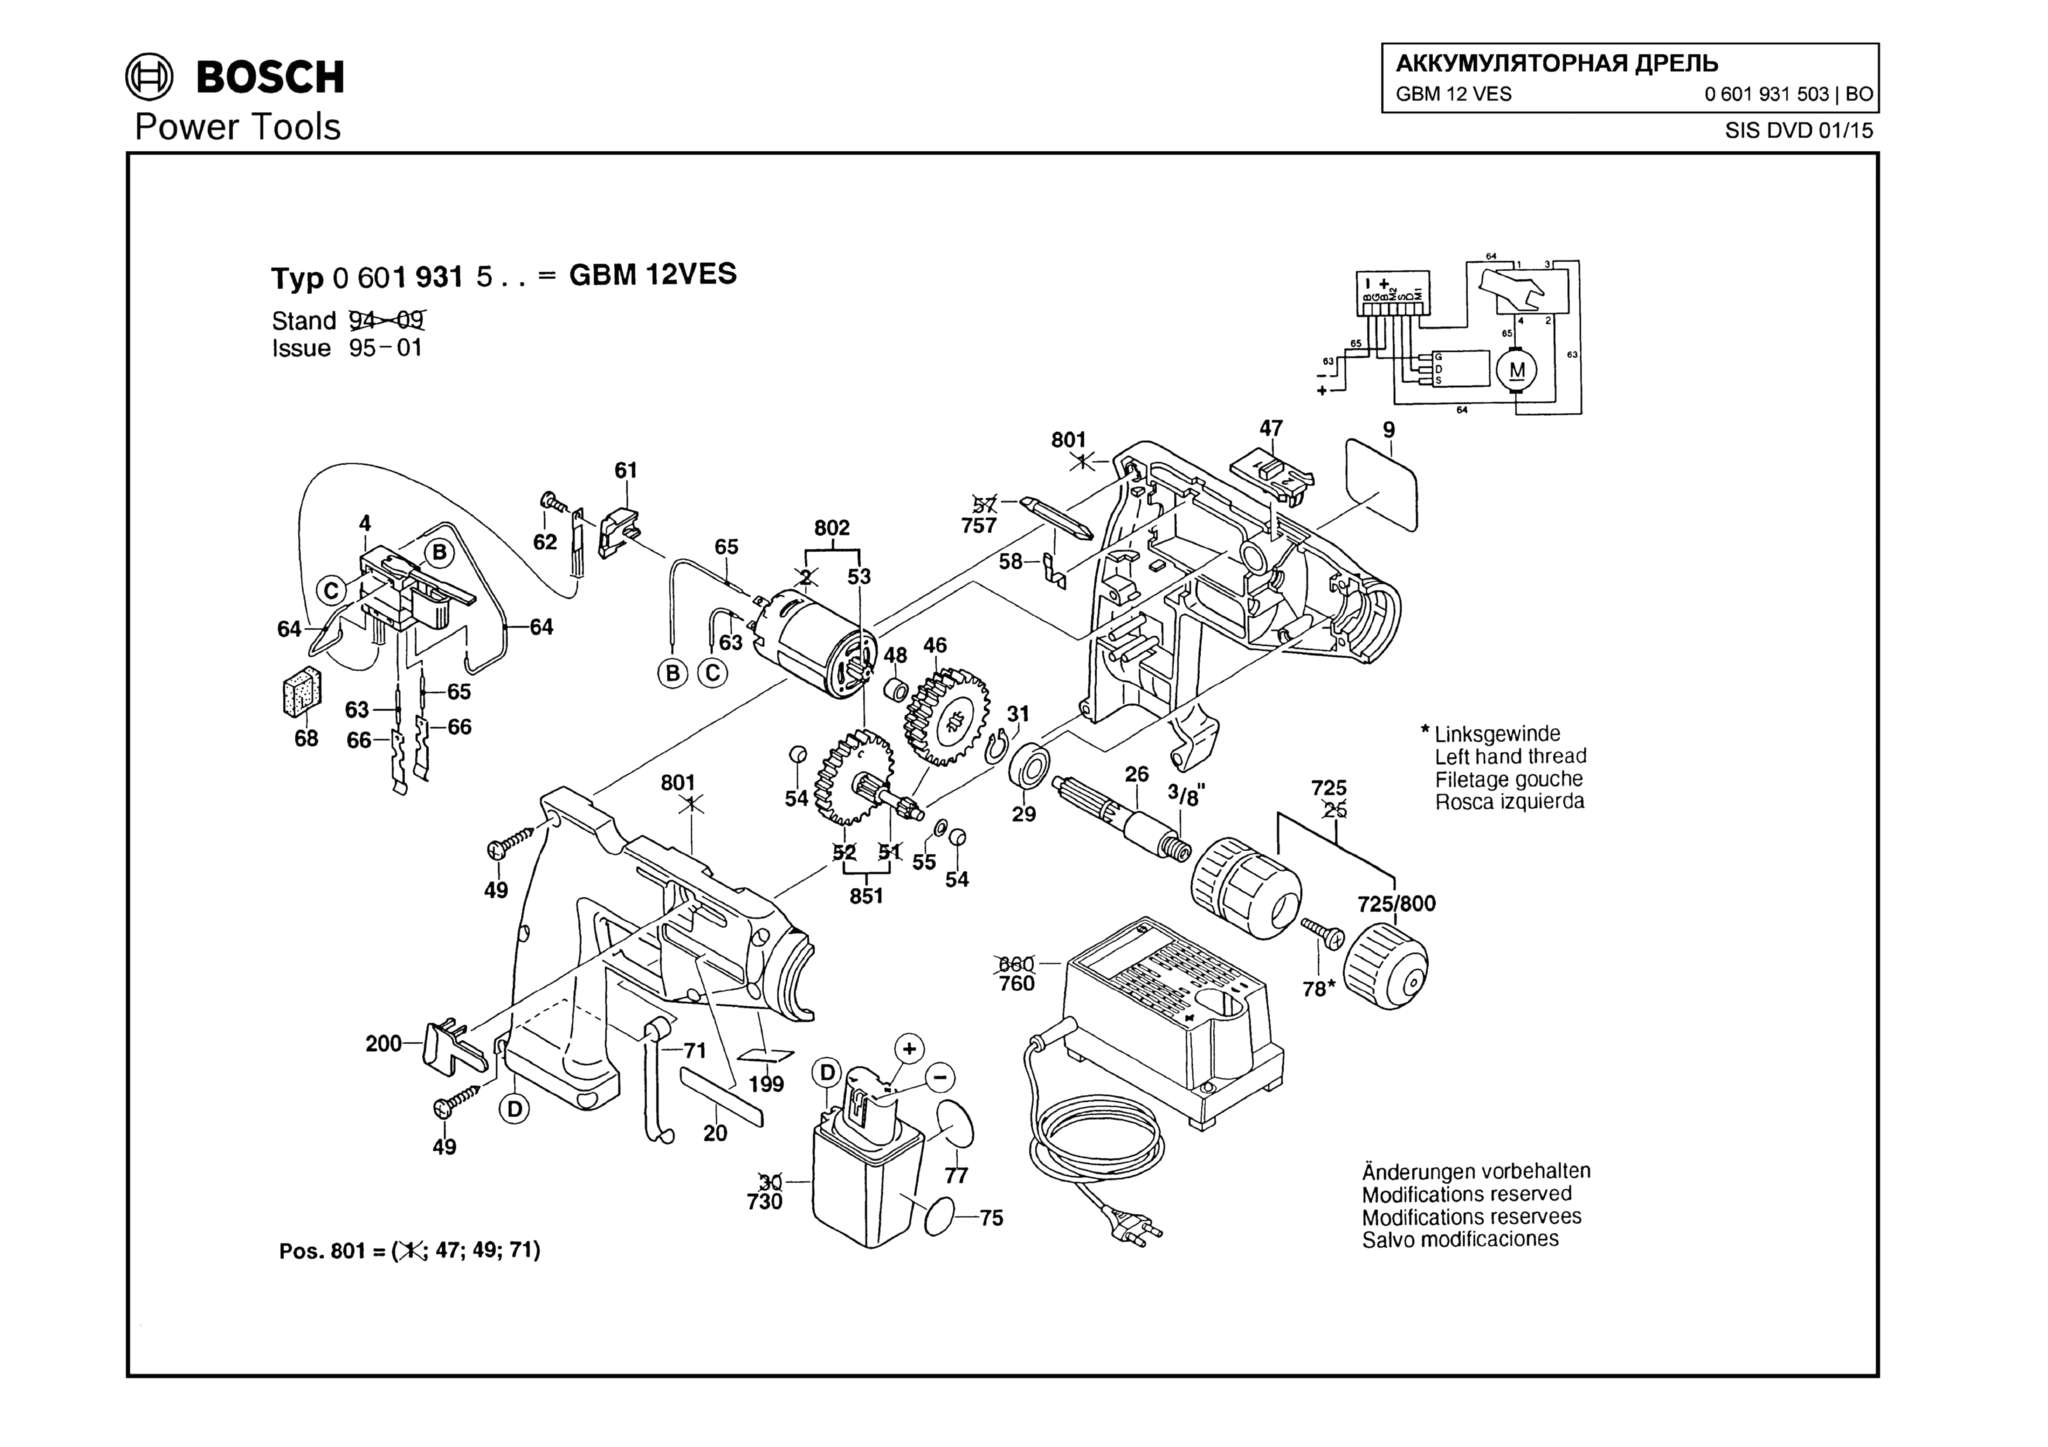 Запчасти, схема и деталировка Bosch GBM 12 VES (ТИП 0601931503)